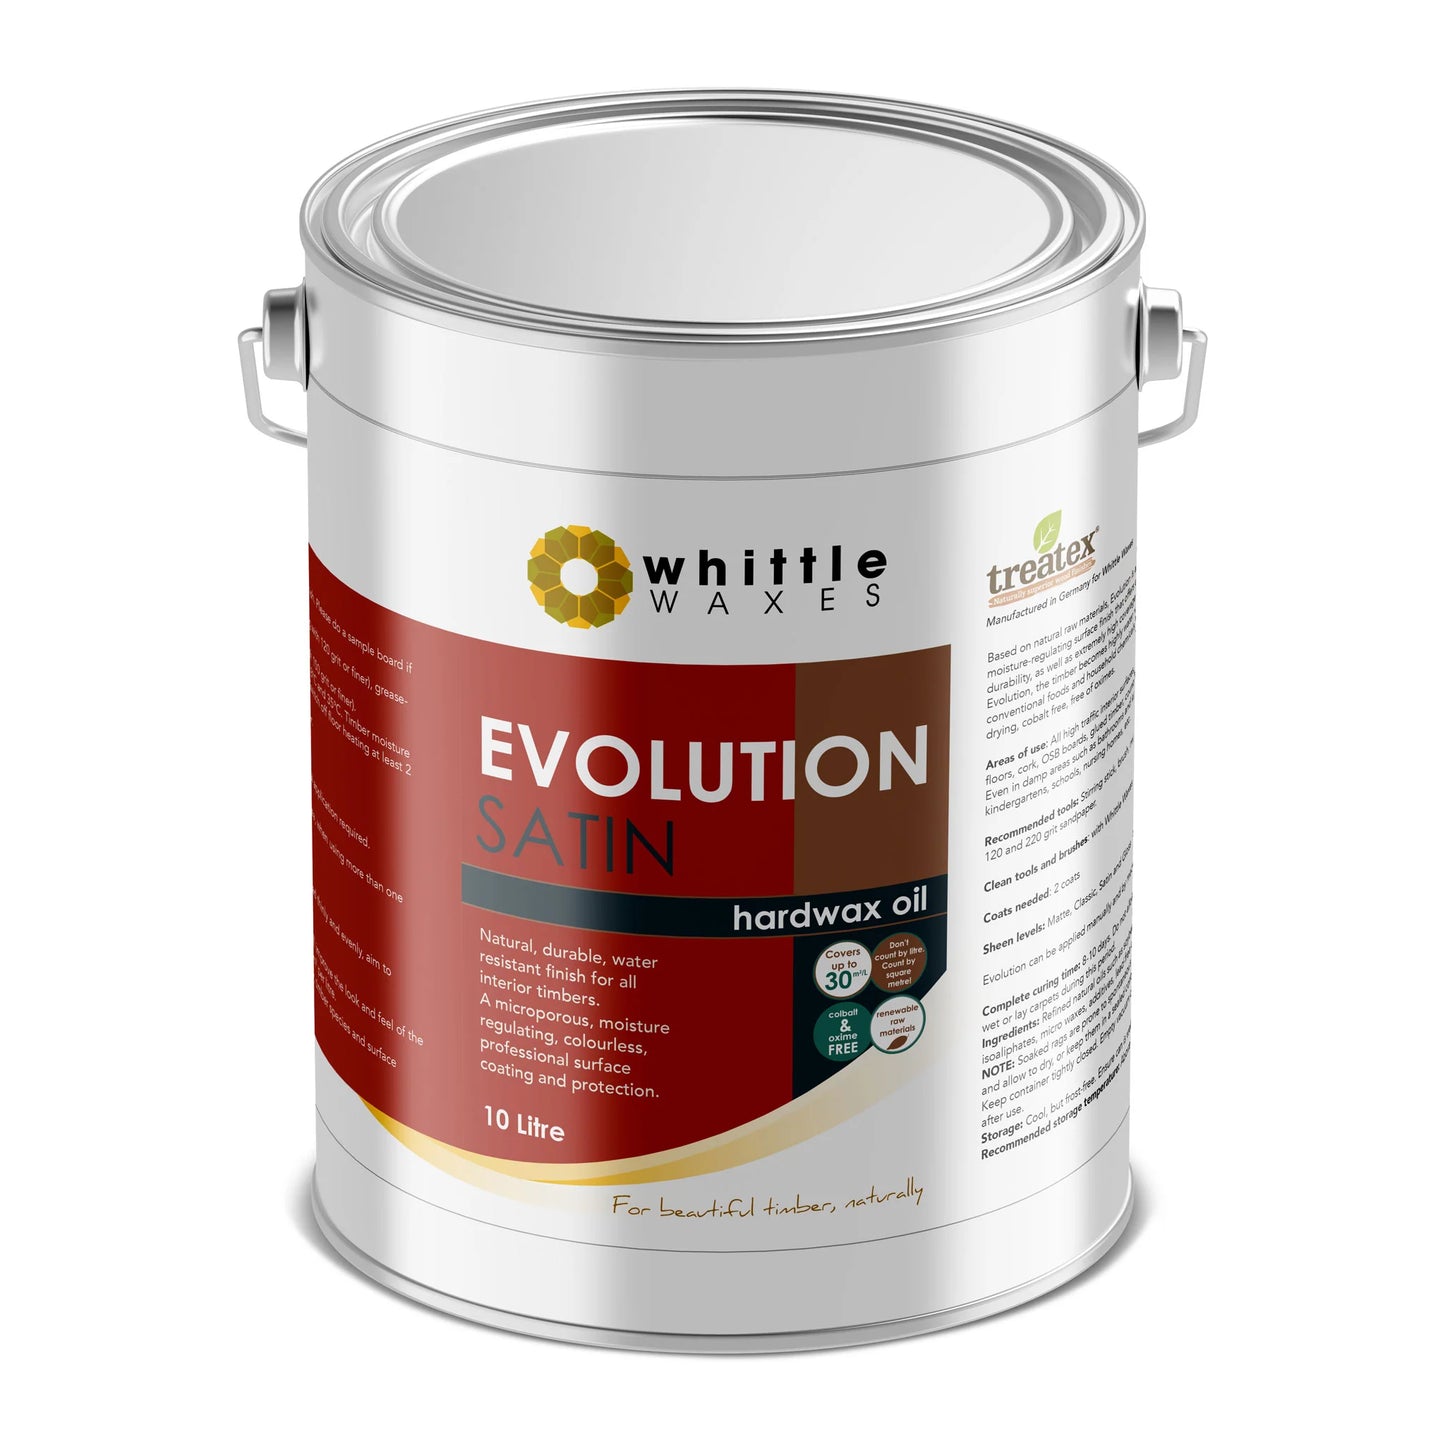 Whittle Waxes - Evolution Hardwax Oil - Satin